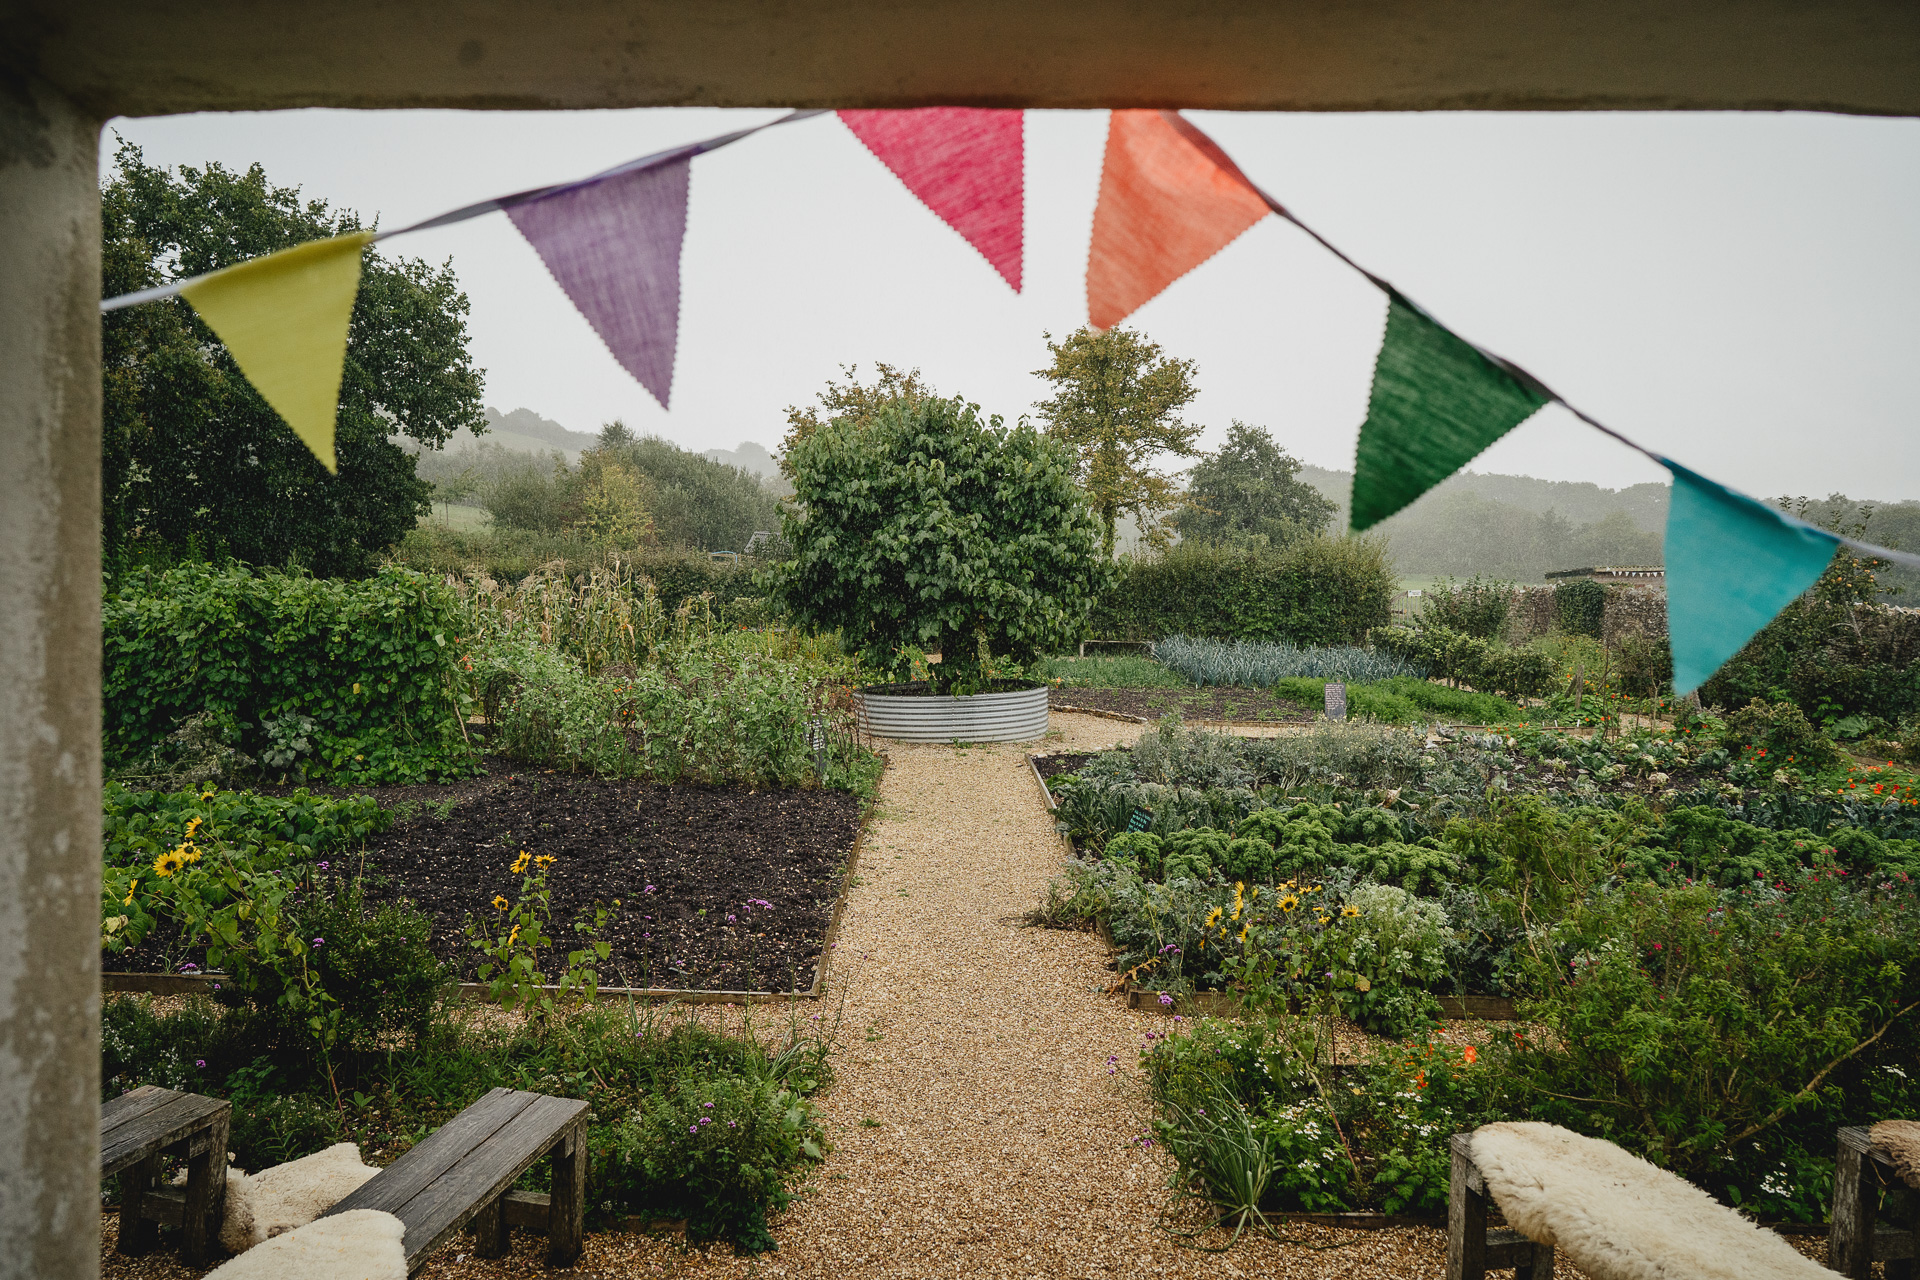 Heavy rain during an autumn wedding in the kitchen garden